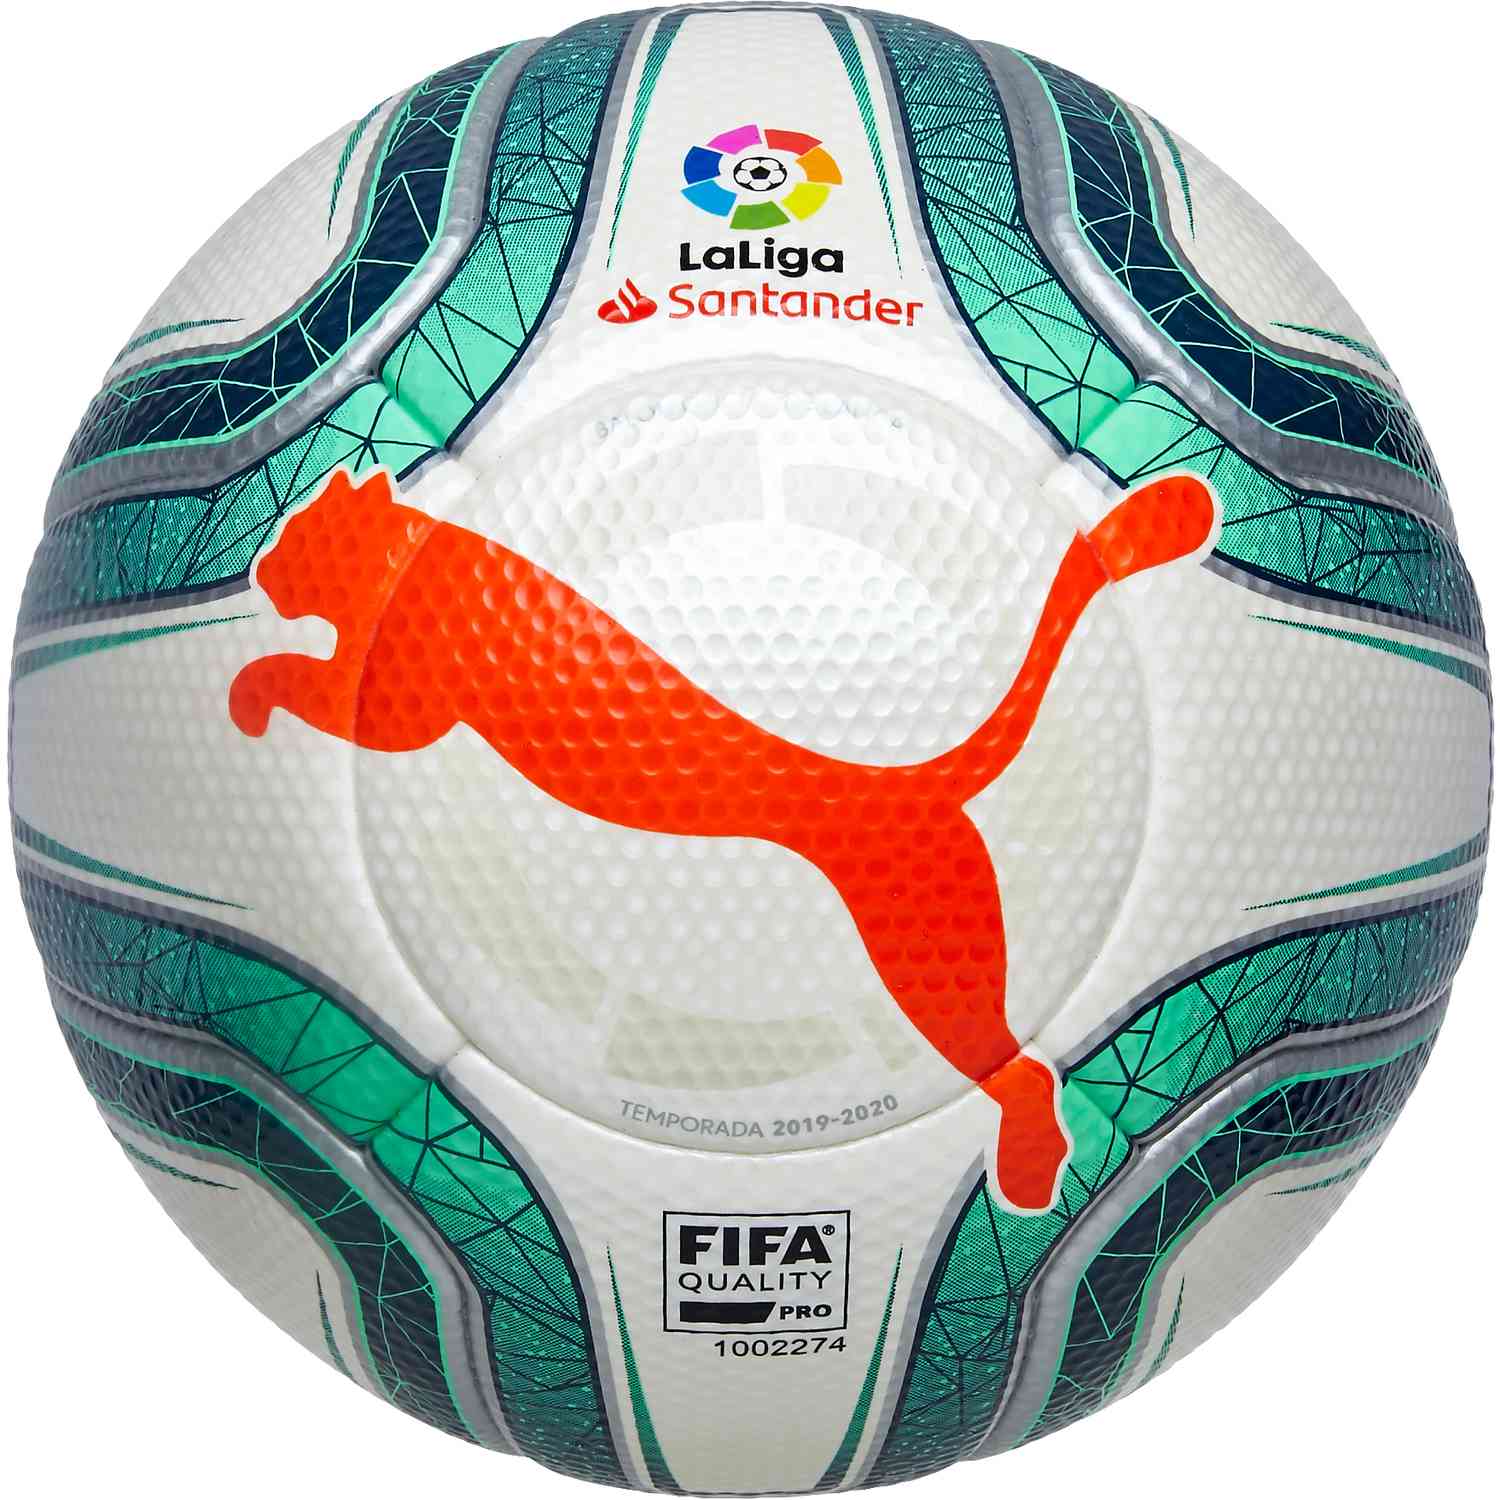 official match ball soccer